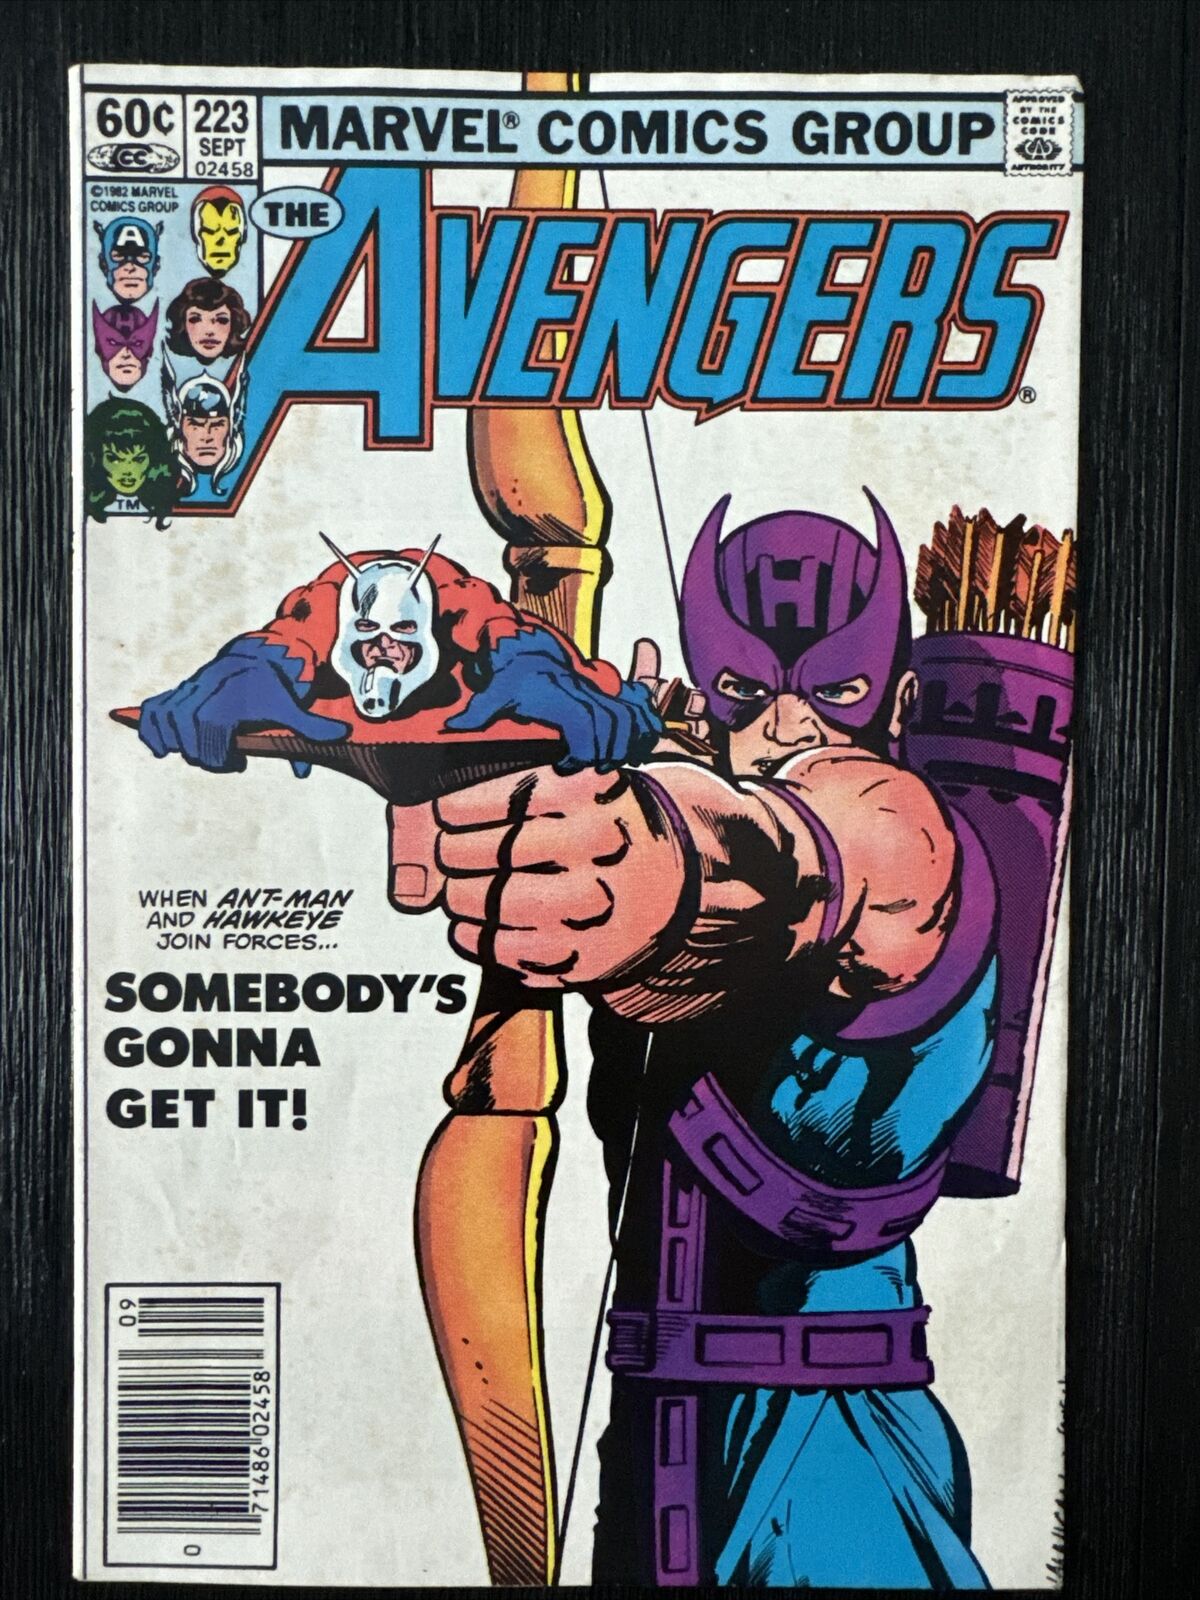 The Avengers #223 (Marvel, September 1982)